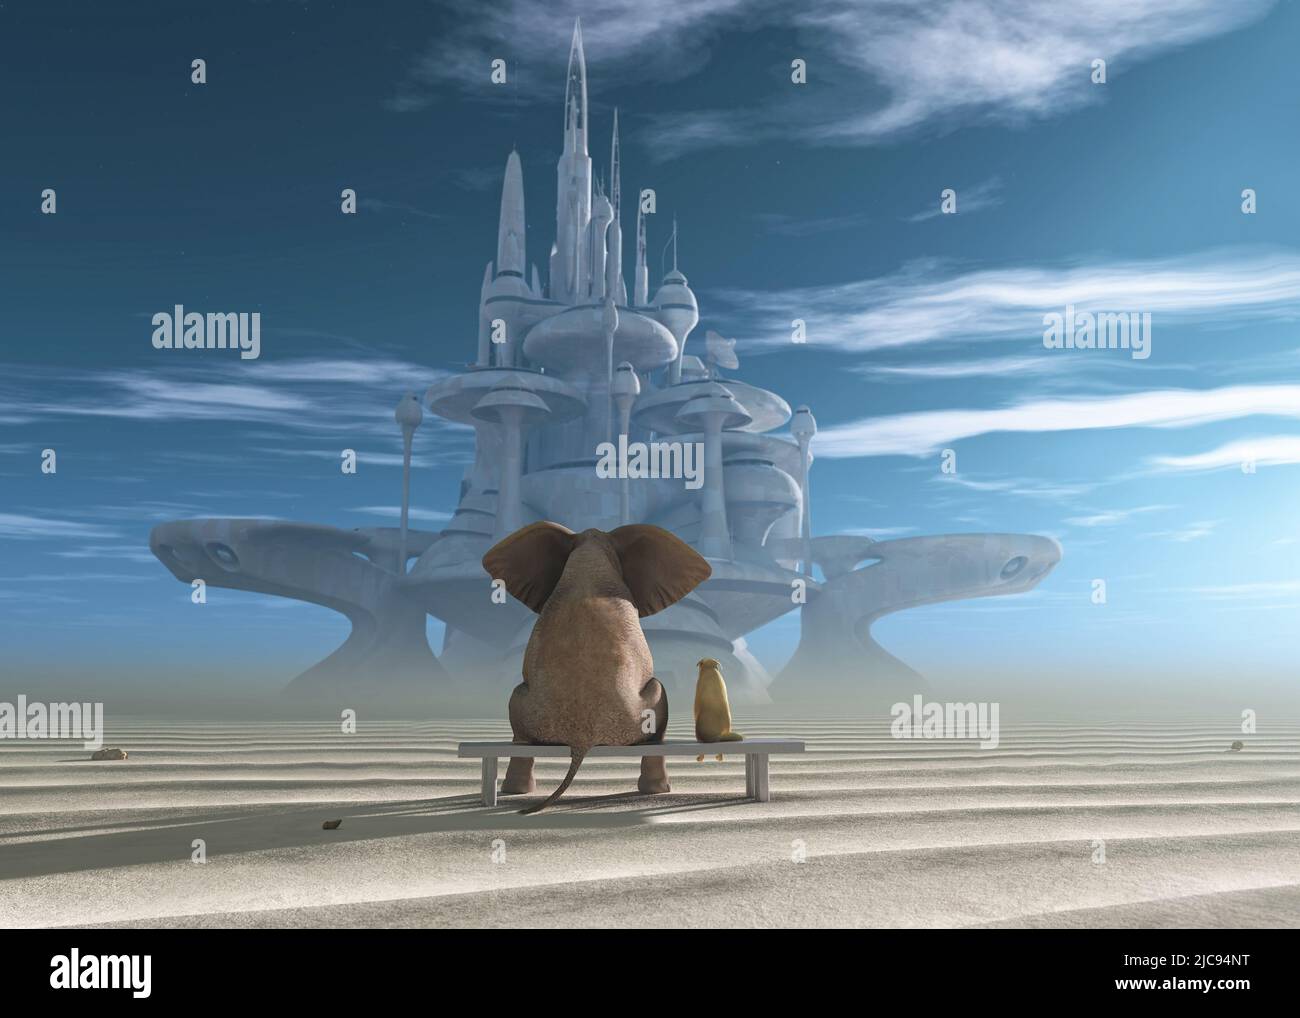 Elephant and Dog siediti nel deserto e guarda la città futuristica Foto Stock